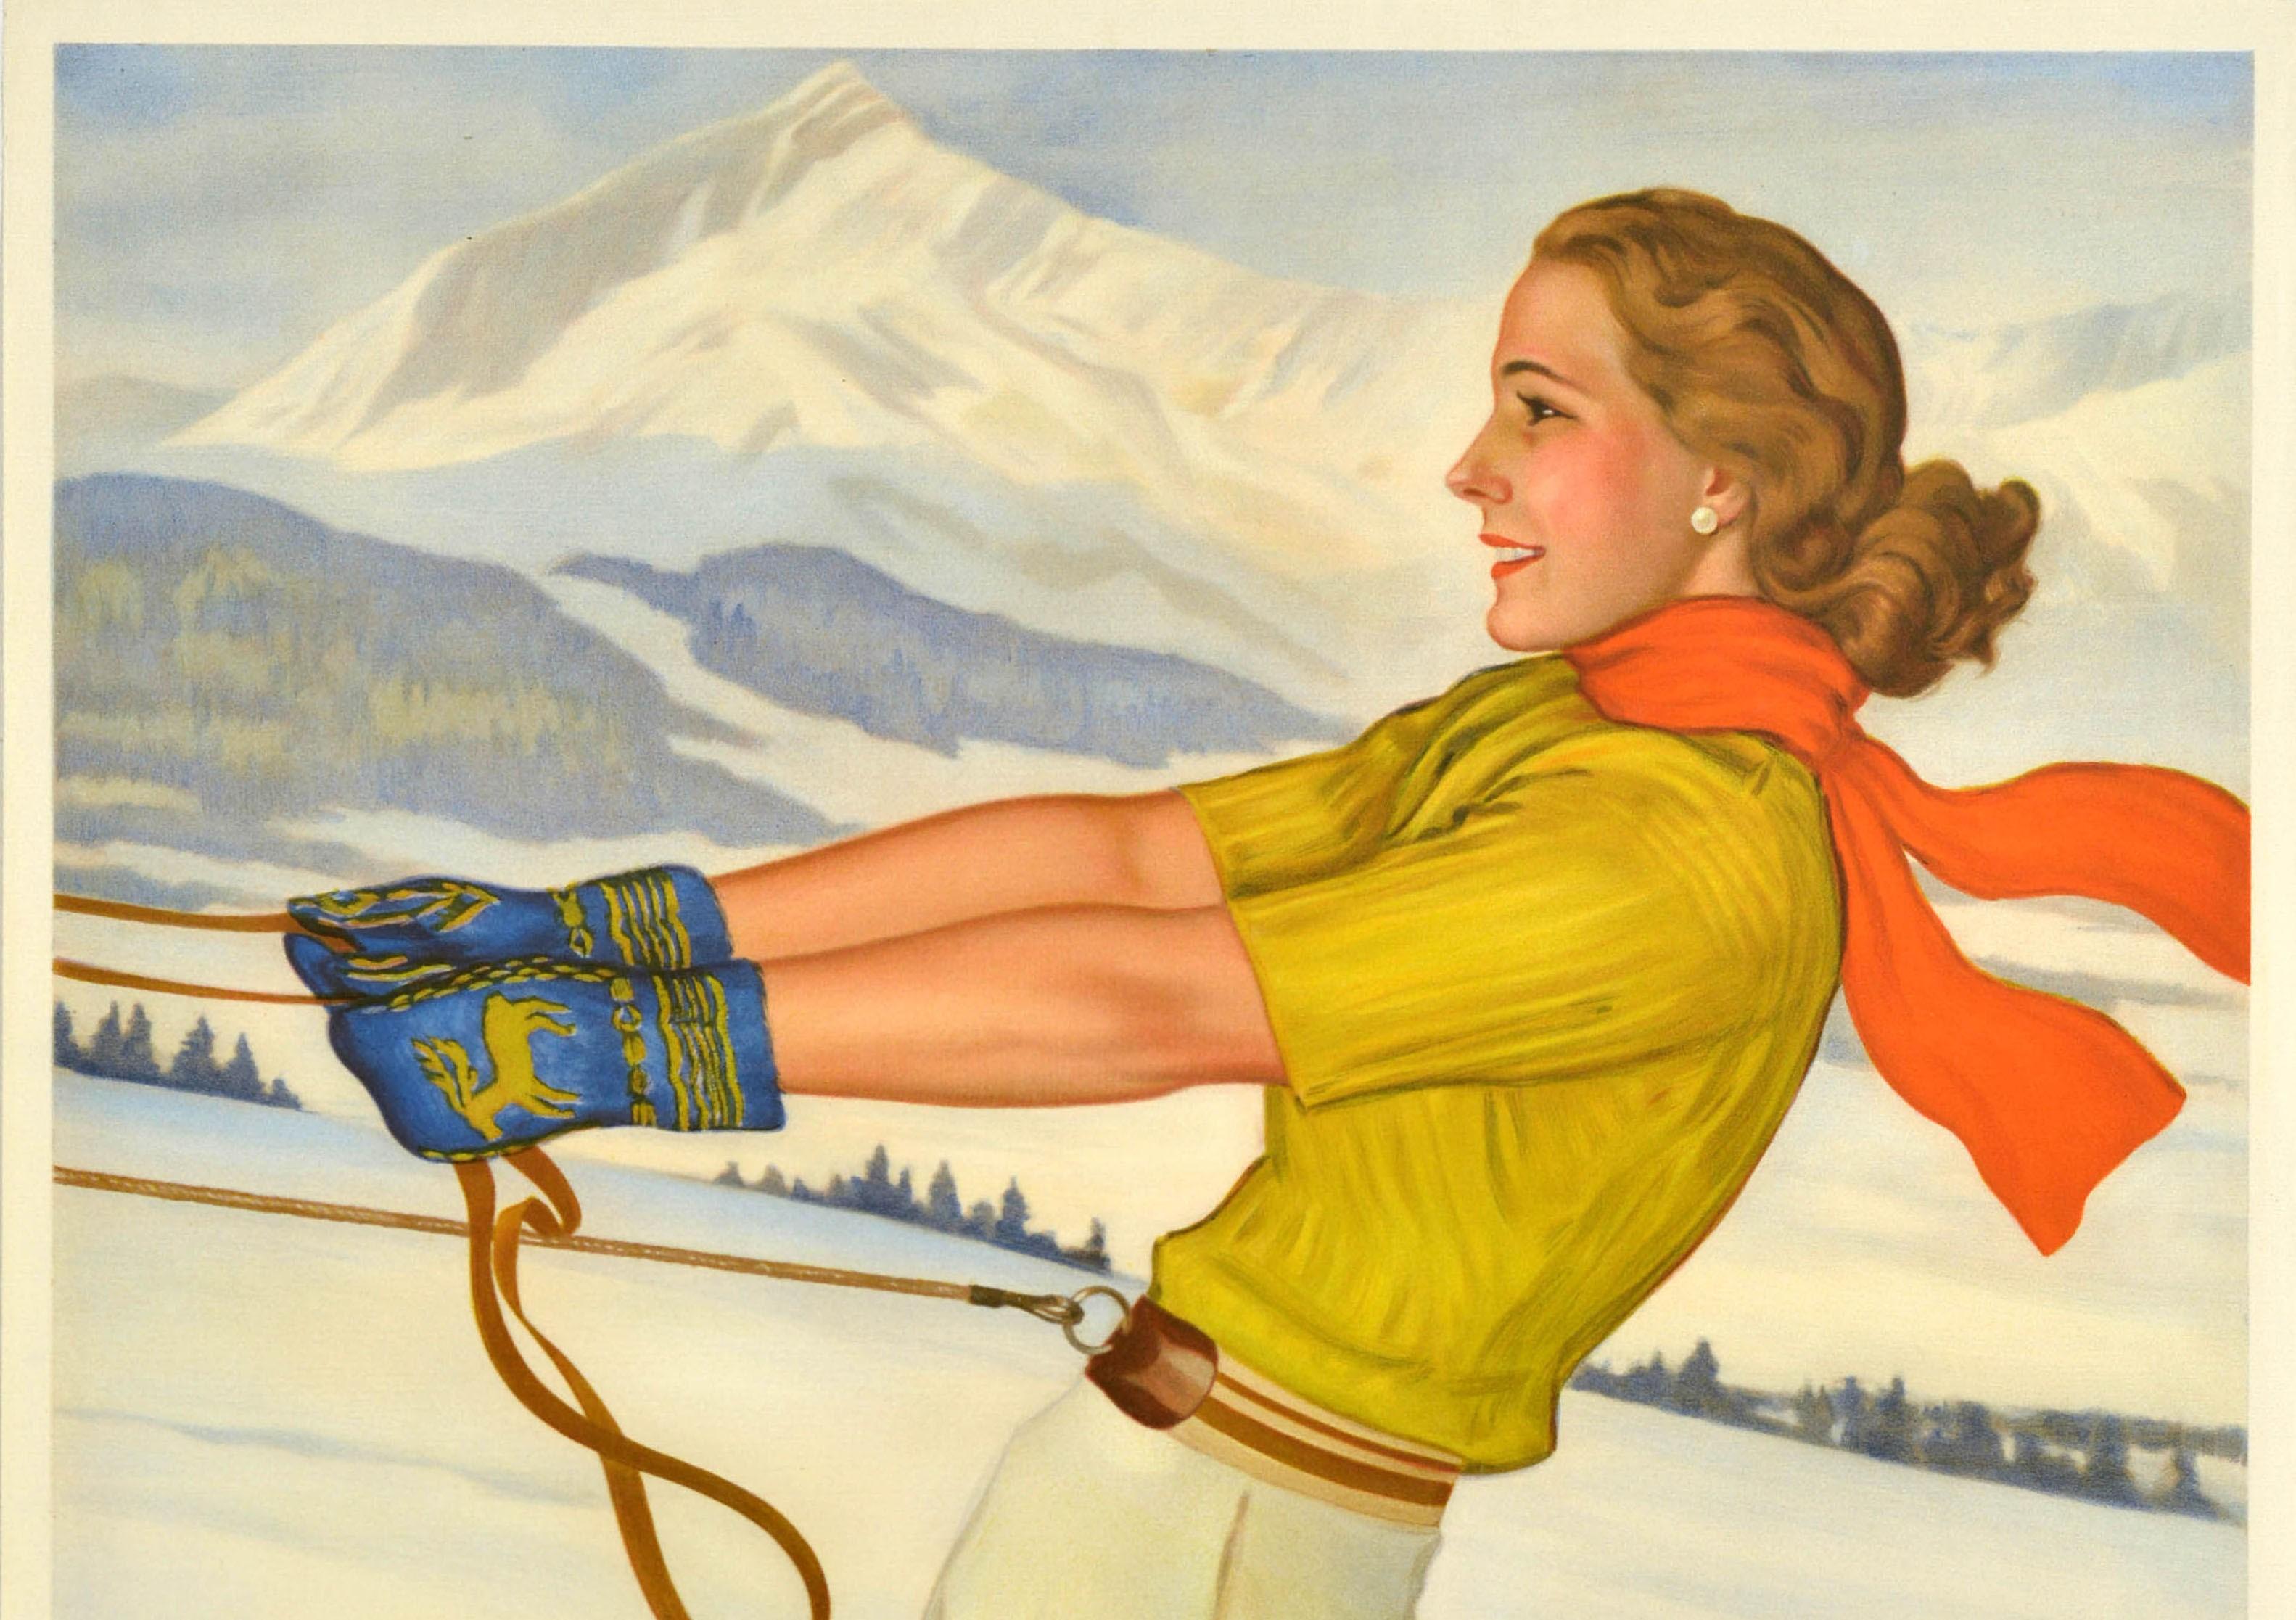 Original Vintage Travel Poster Garmisch Partenkirchen Winter Sport Health Skiing - Print by Rolf Niczky